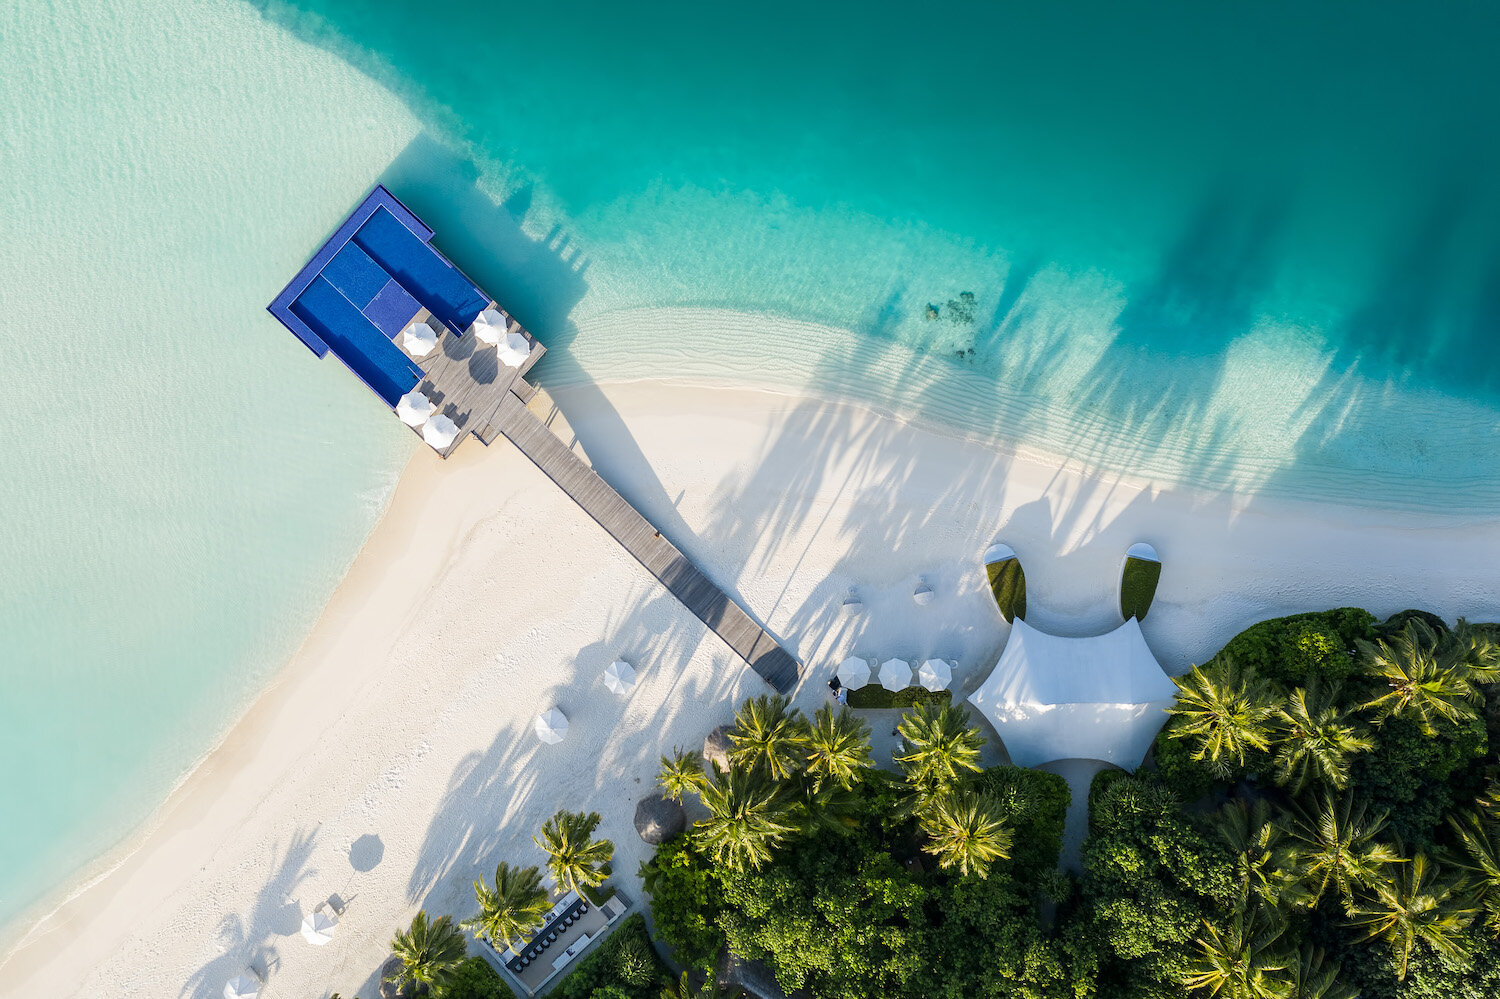 CONRAD MALDIVES - The Quiet Zone_Aerial_credit Justin Nicholas - hi-res copy.jpg